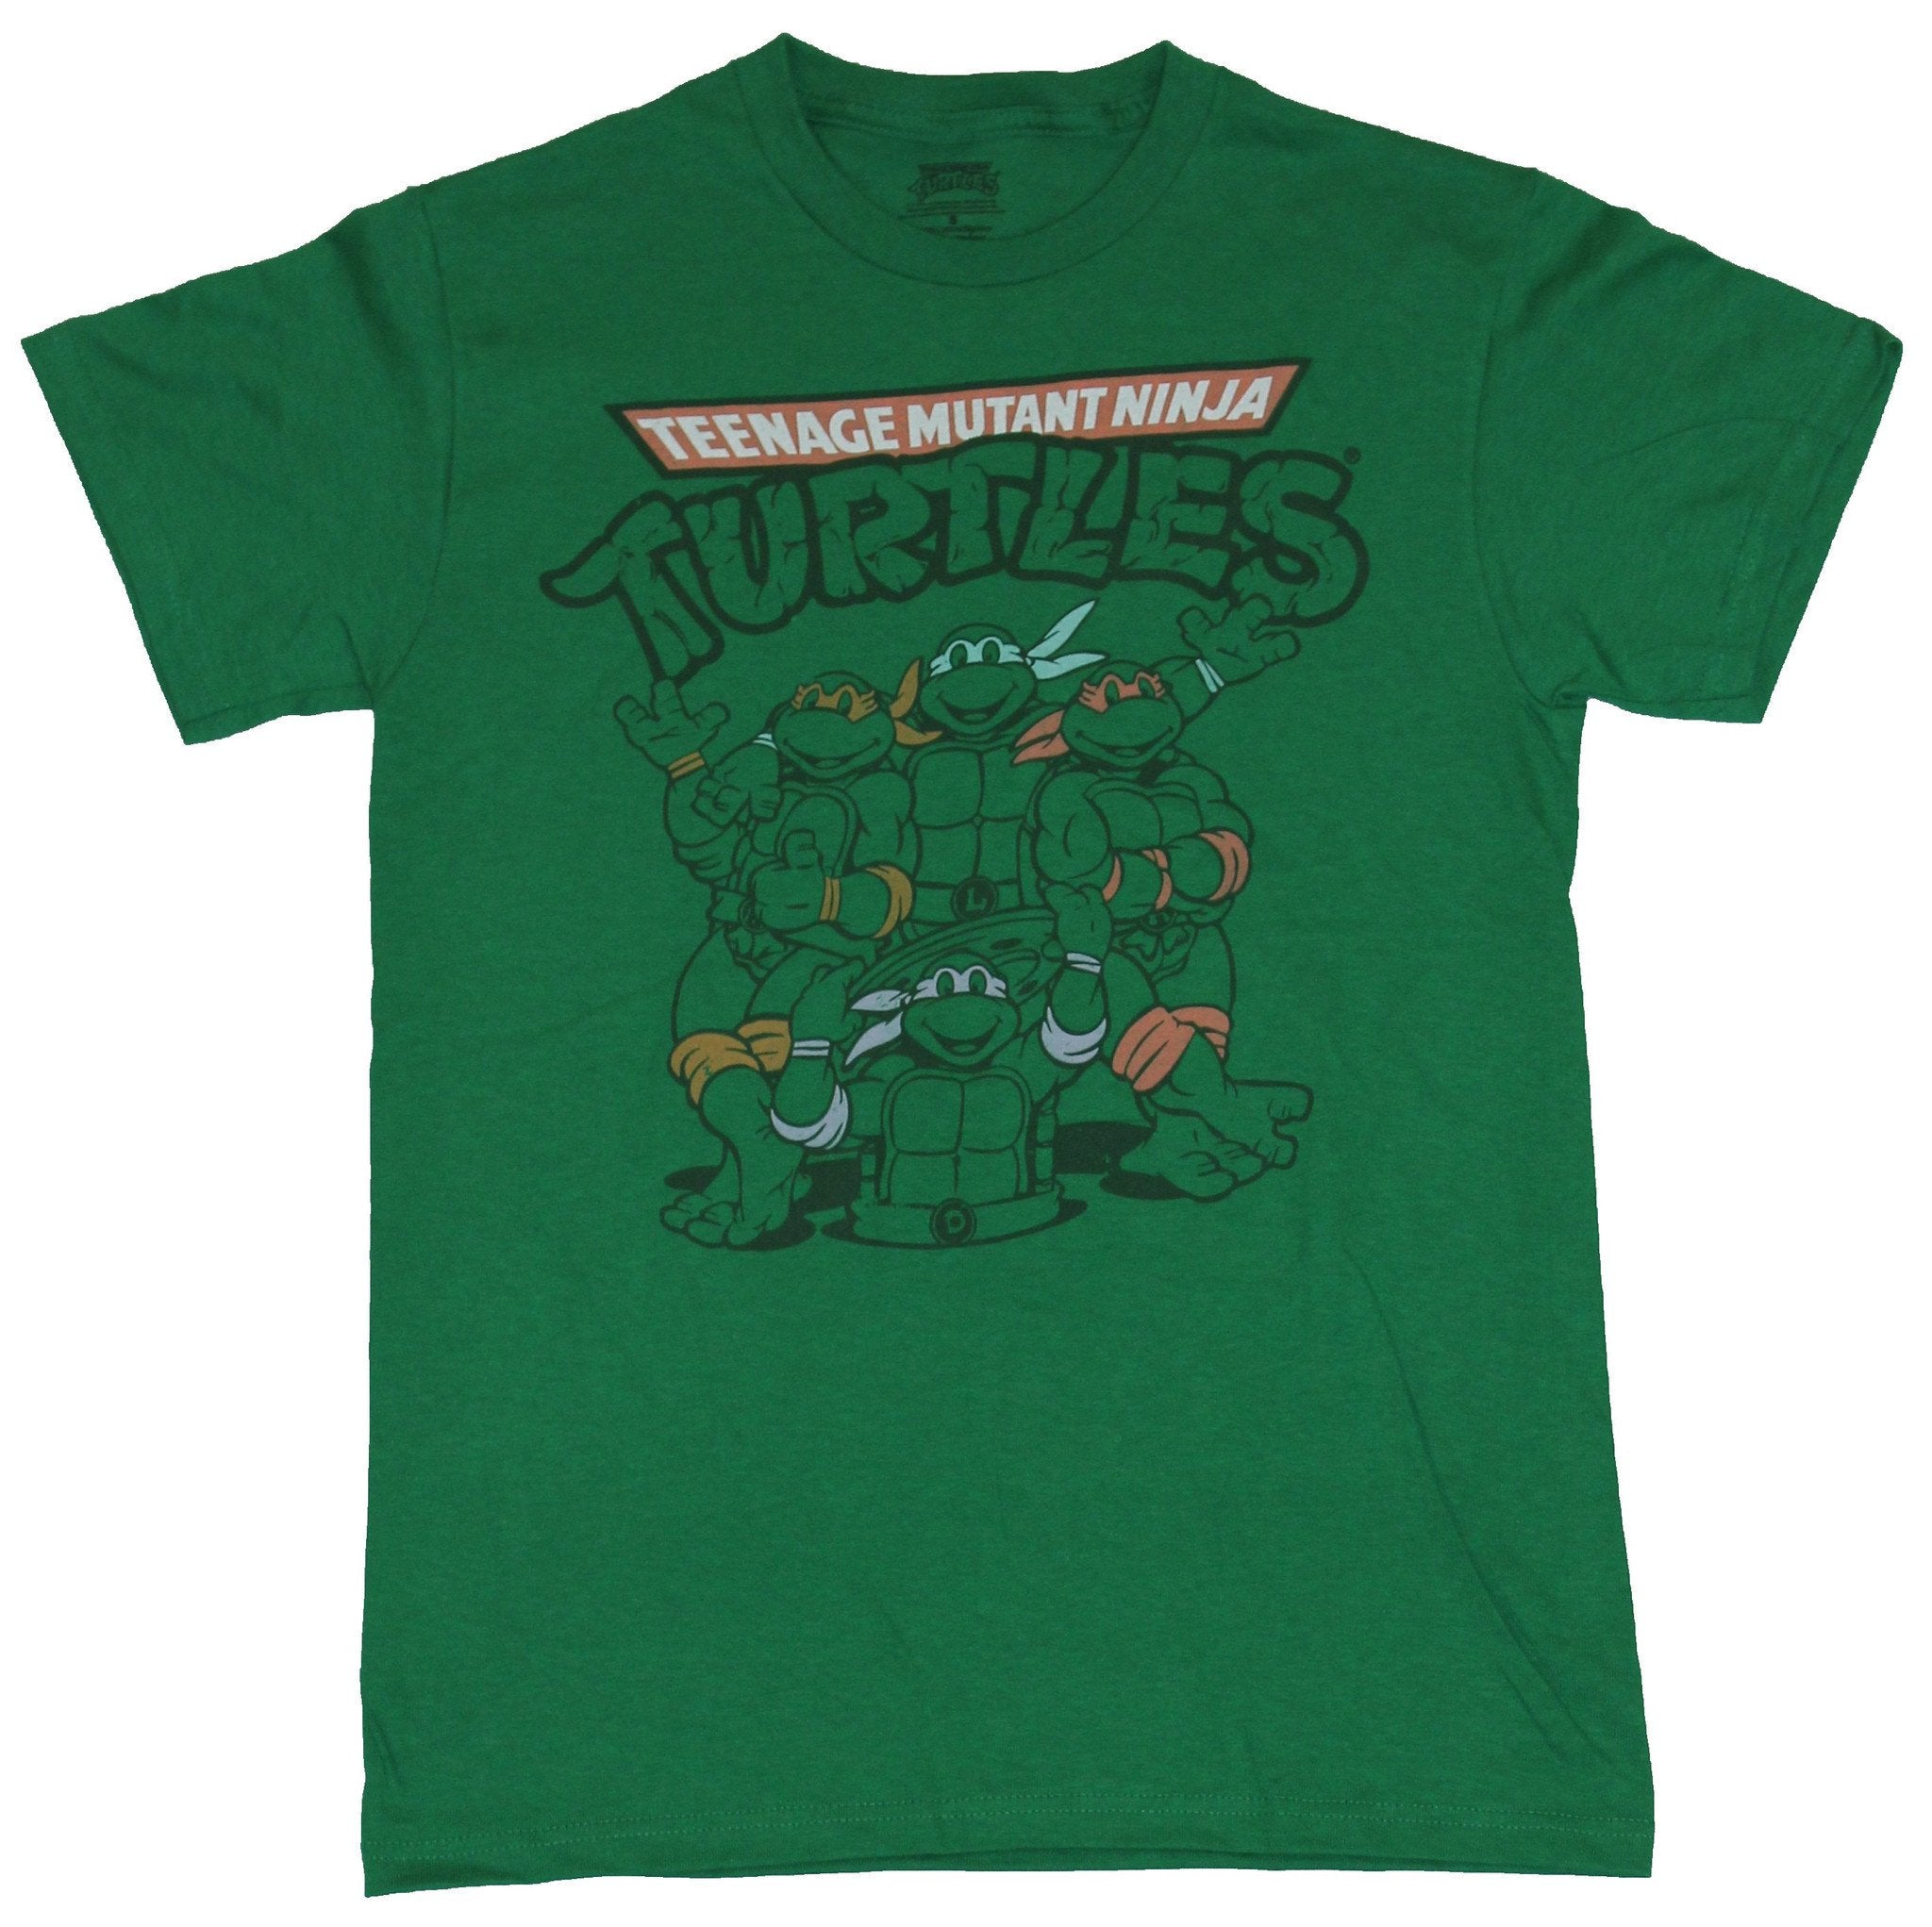 Teenage Mutant Ninja Turtles Mens T-Shirt - Line Drawn Turtles Around Manhole